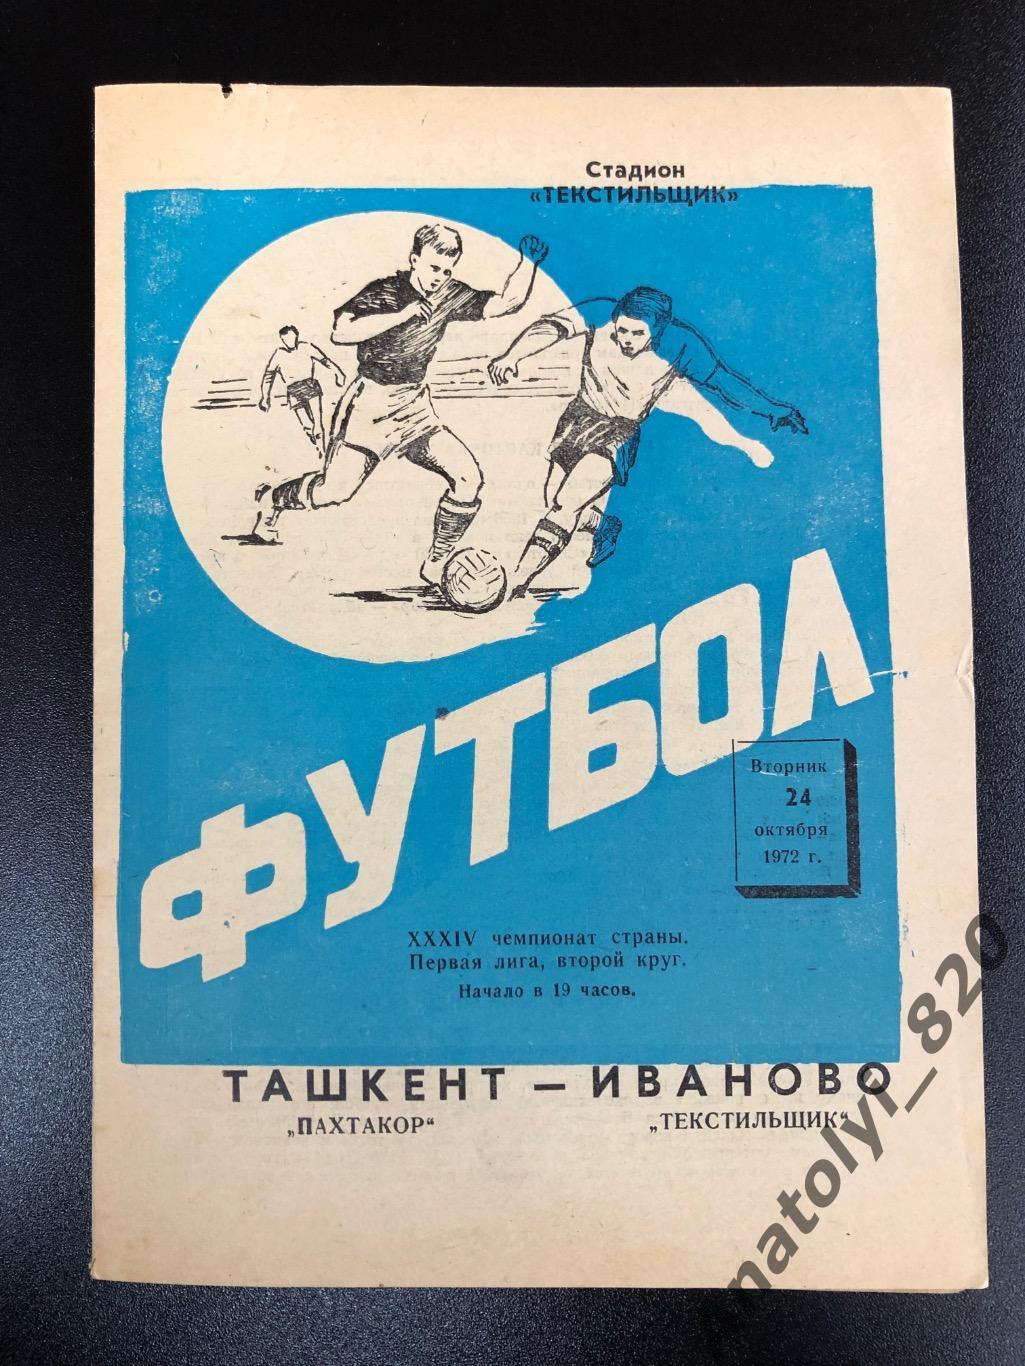 Текстильщик Иваново - Пахтакор Ташкент 1972 год